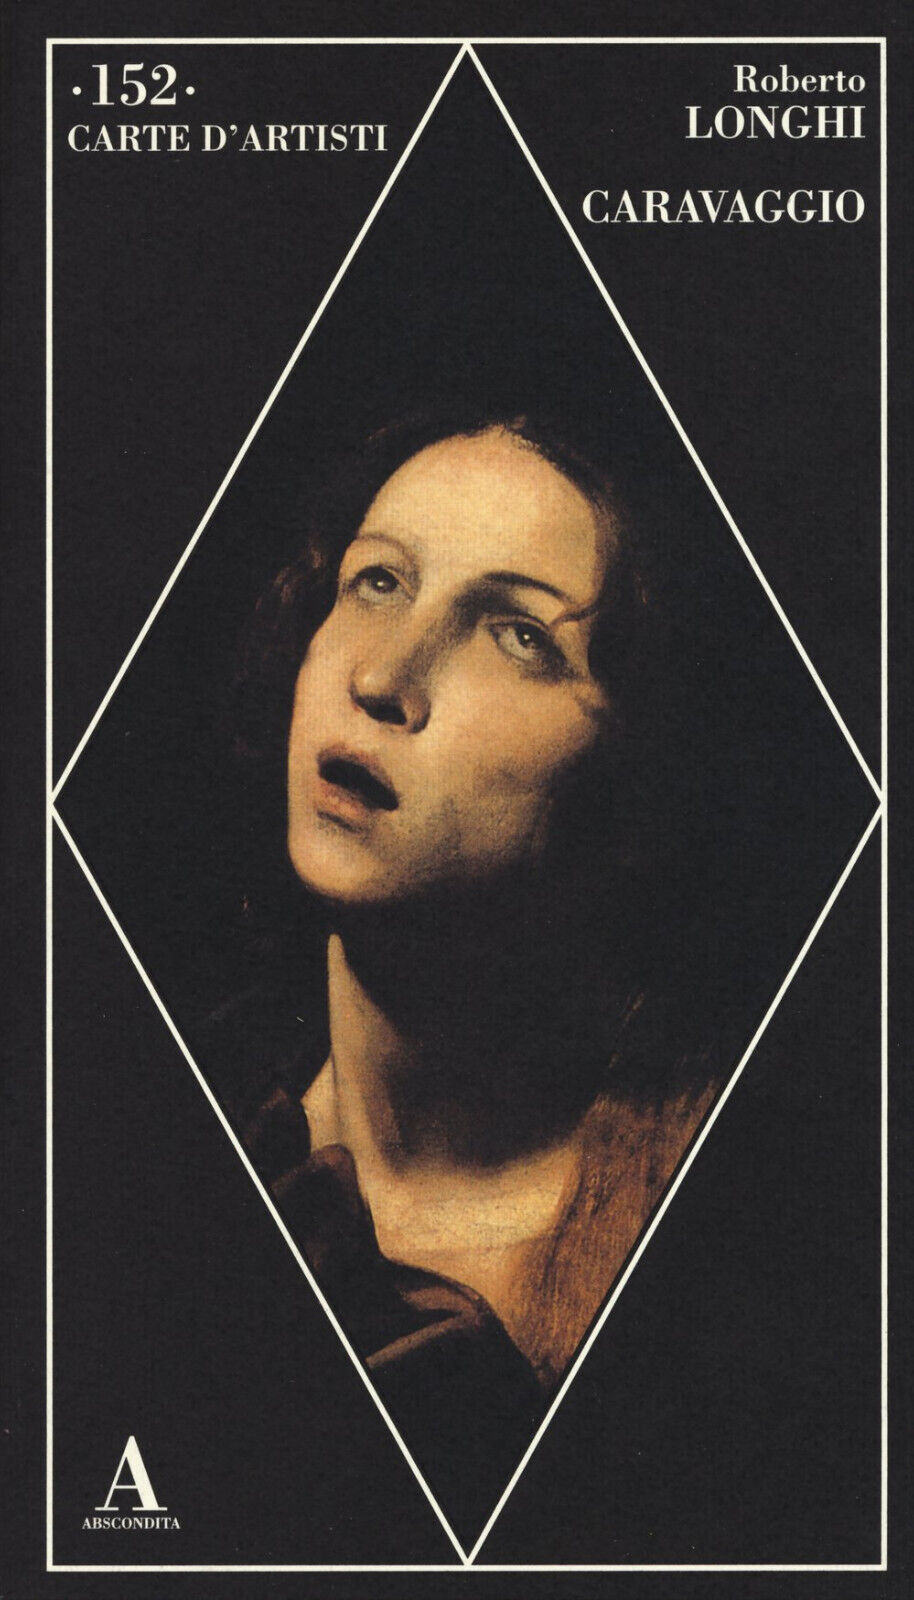 Caravaggio - Roberto Longhi - Abscondita, 2015